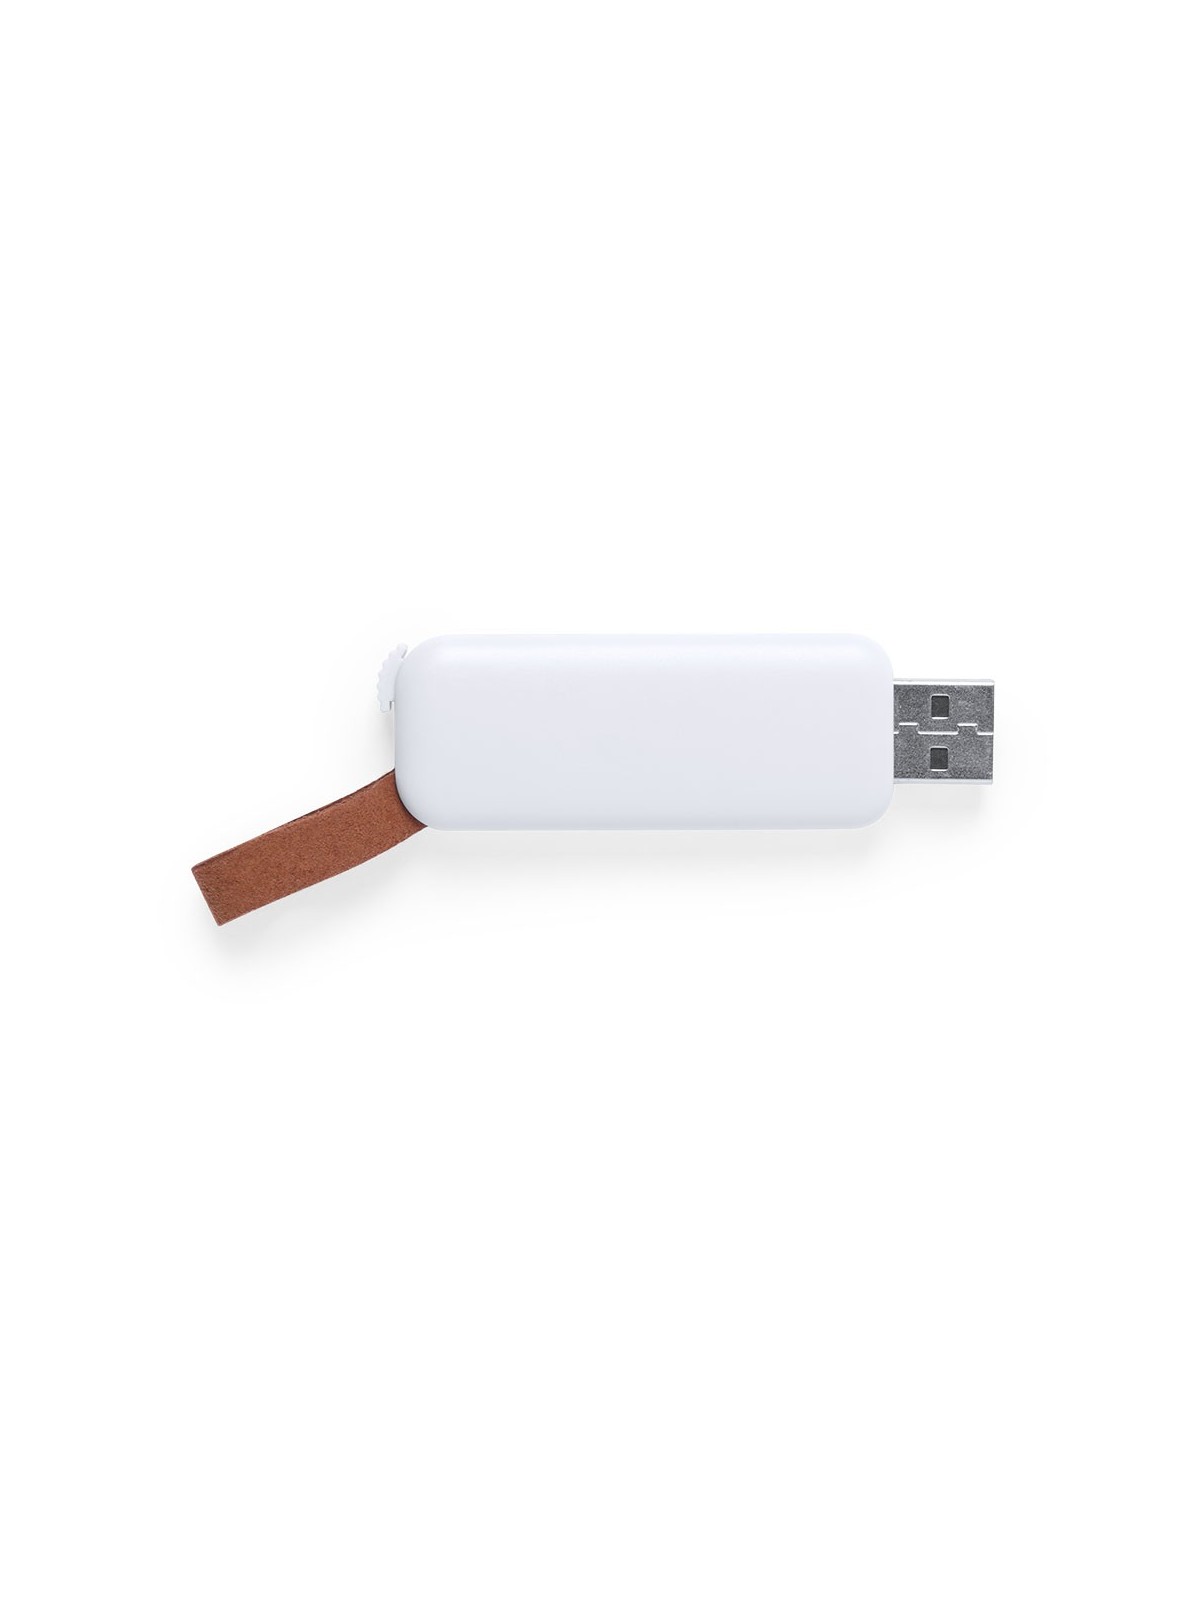 59-042 Clé USB zilak personnalisée  personnalisé